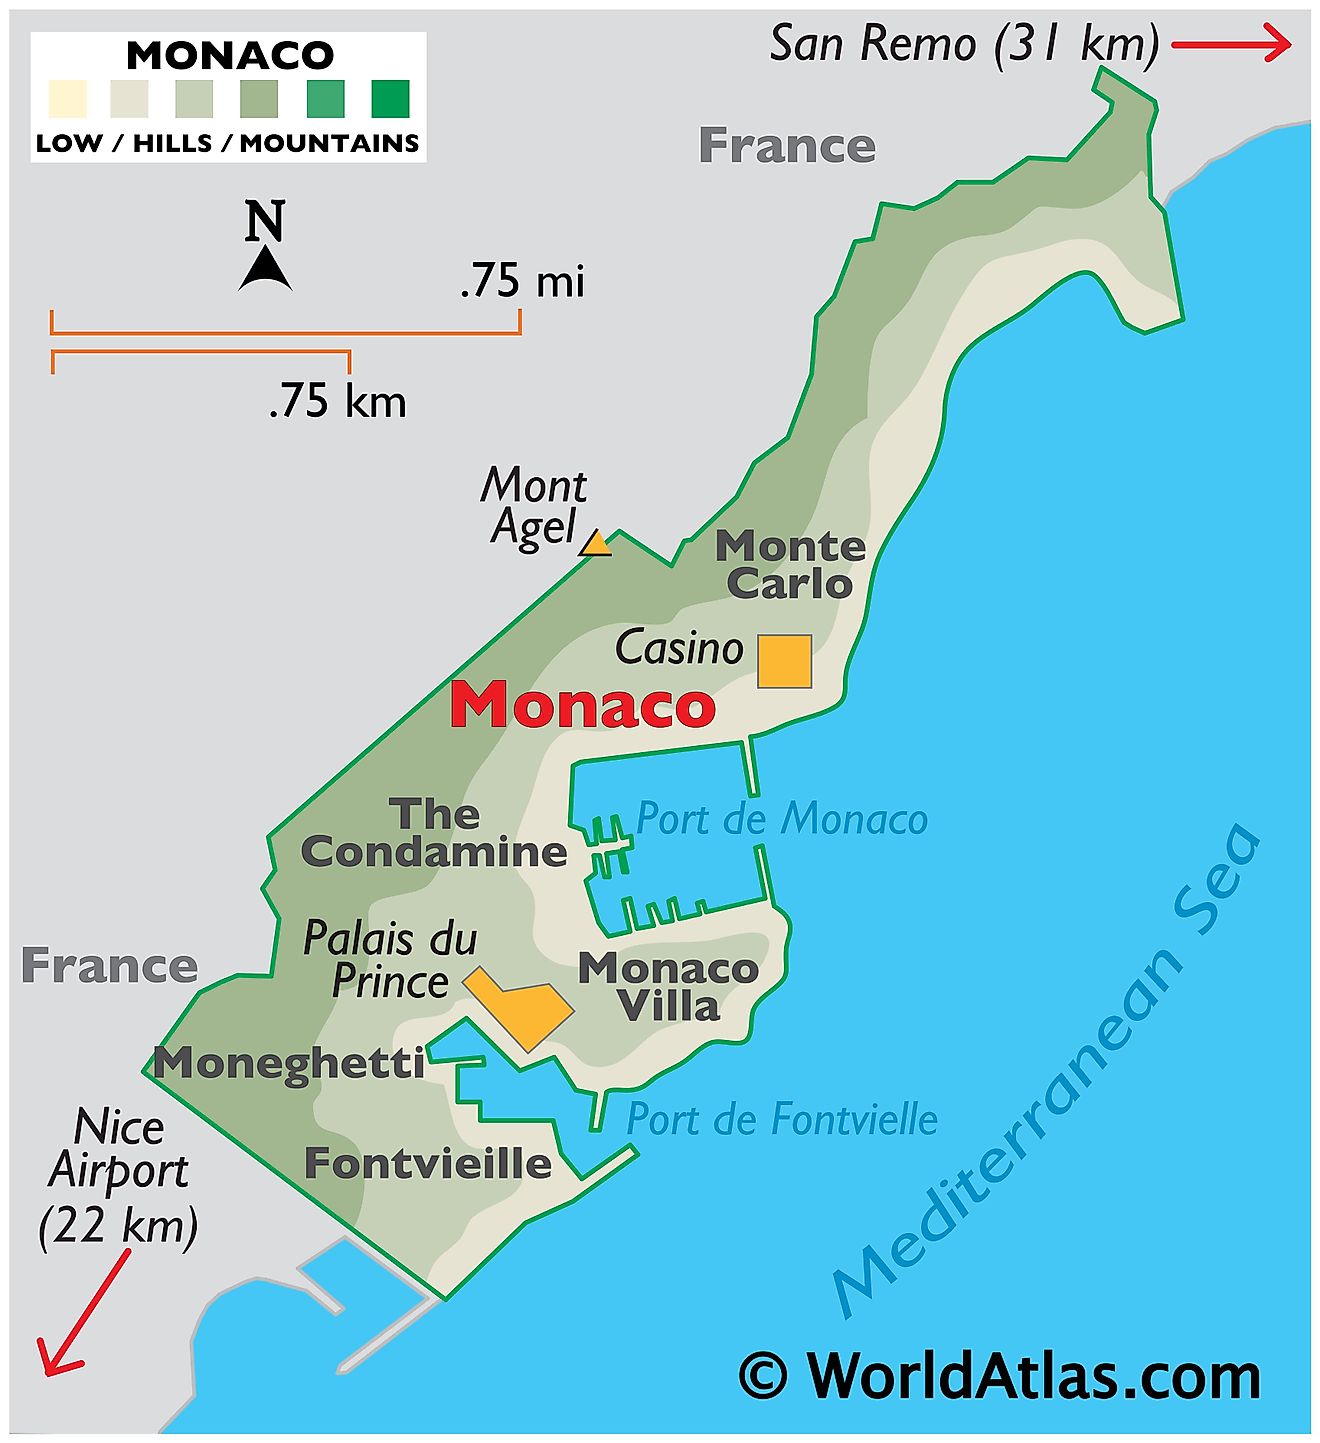 Mapa Físico de Mónaco que muestra el relieve, la costa, los puertos, los centros urbanos importantes, el punto más alto de Mont Agel y el Casino.